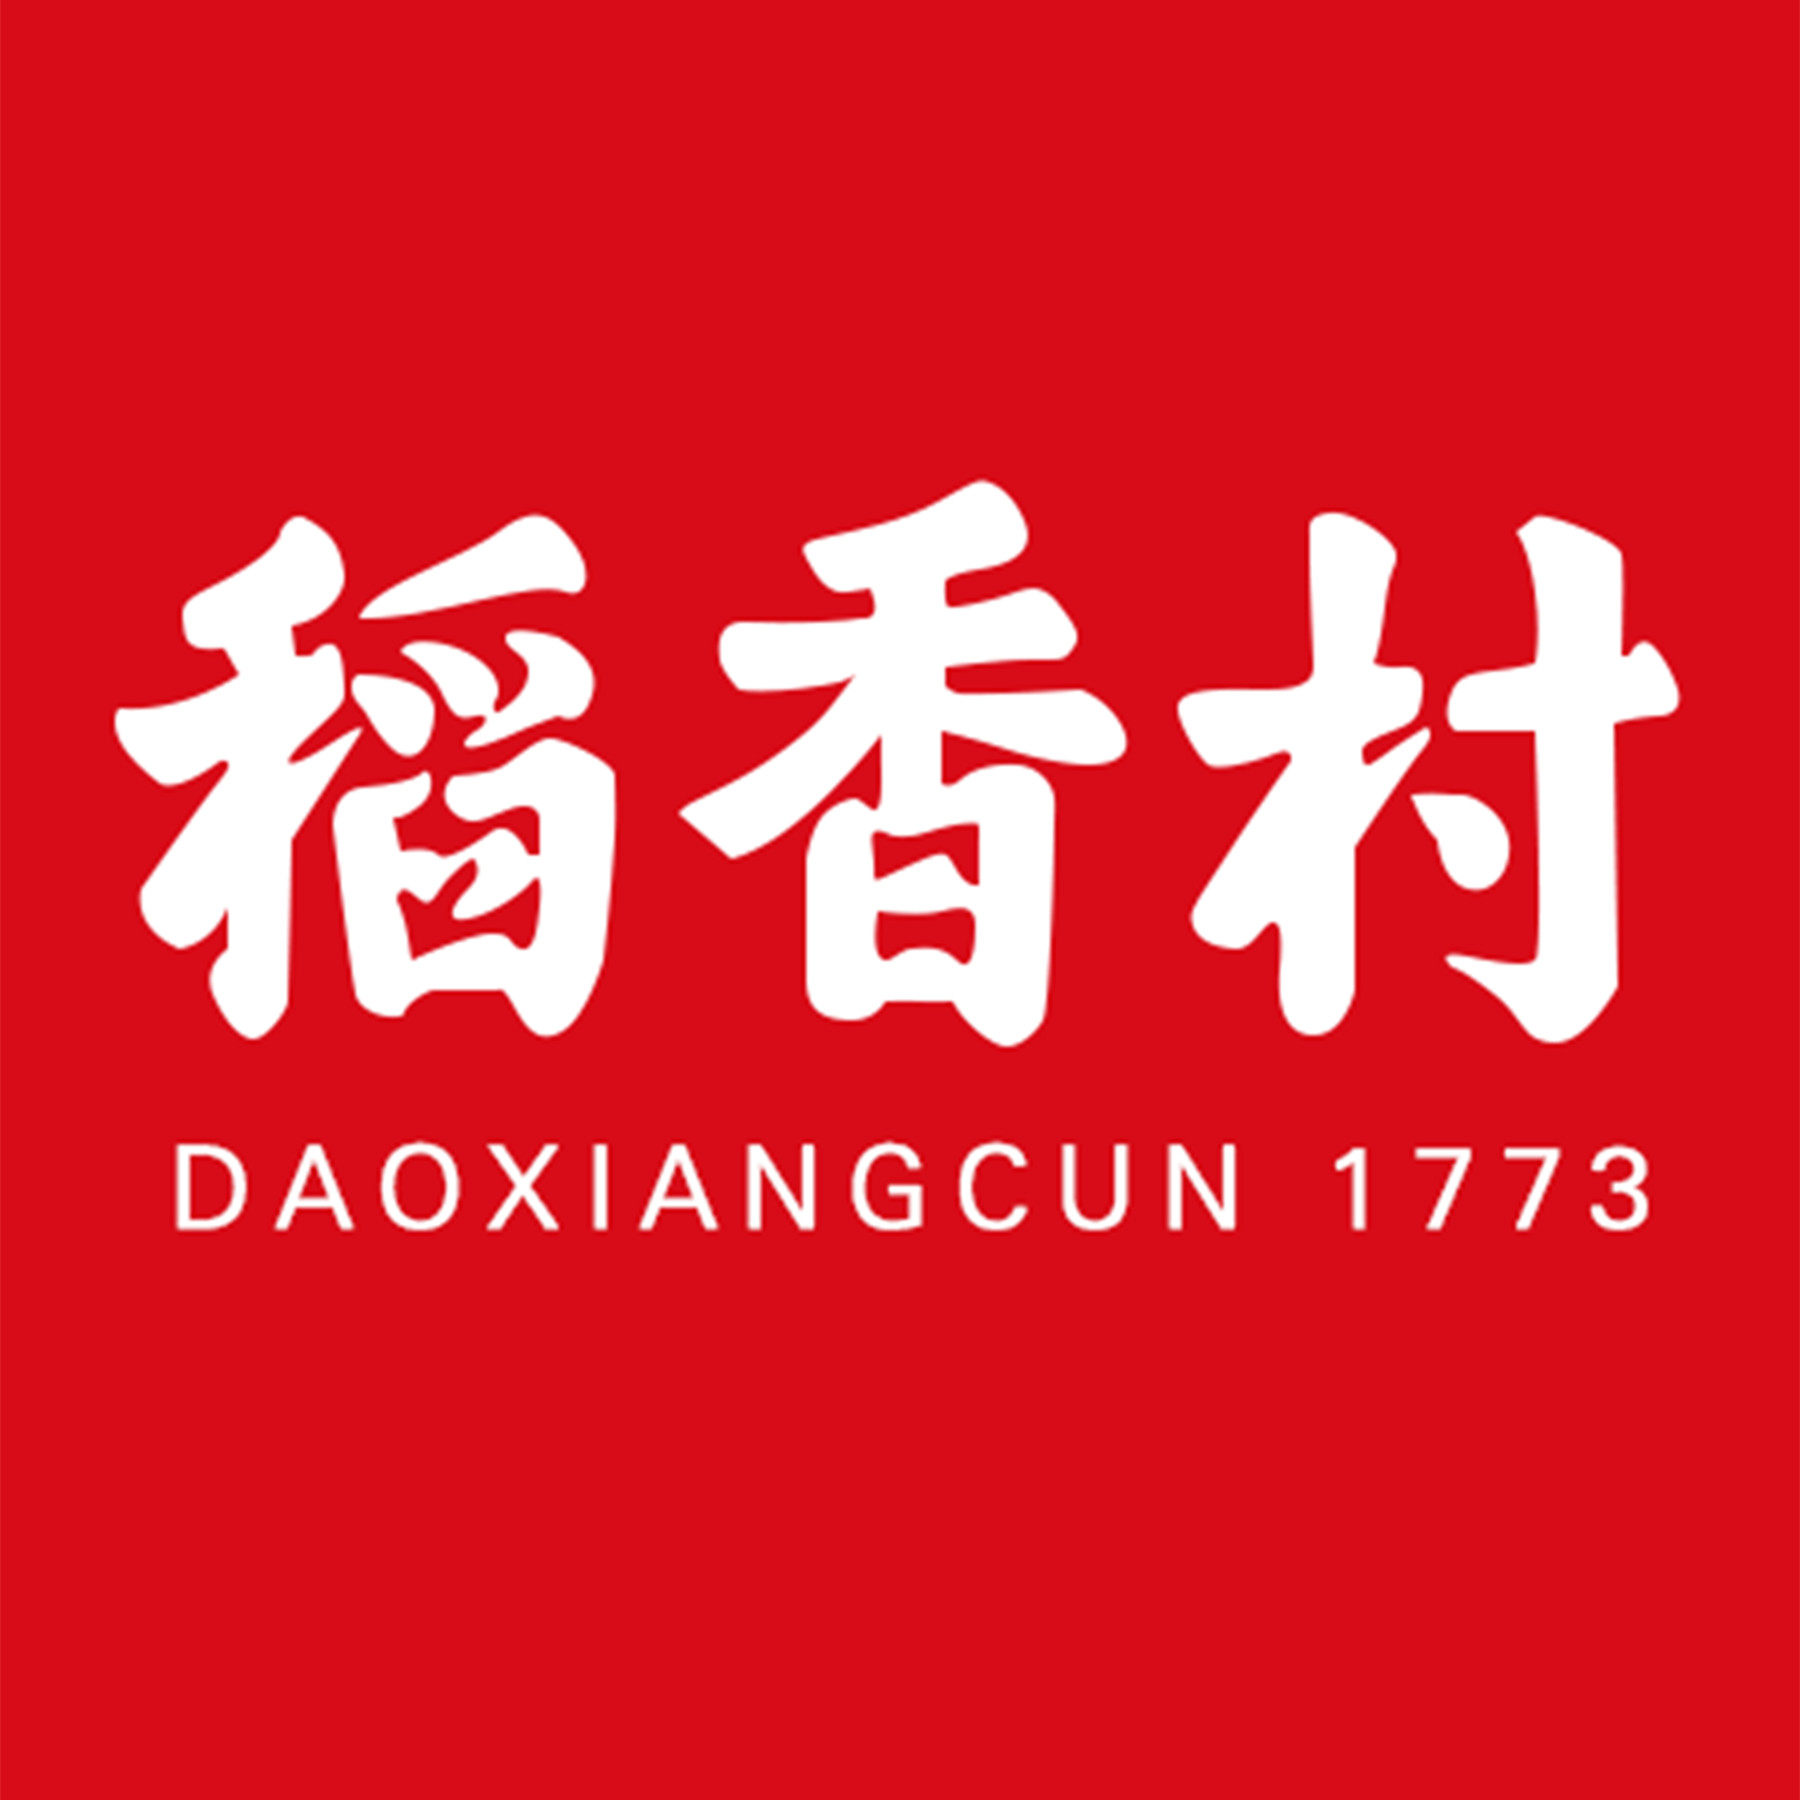 稻香村月饼logo图片